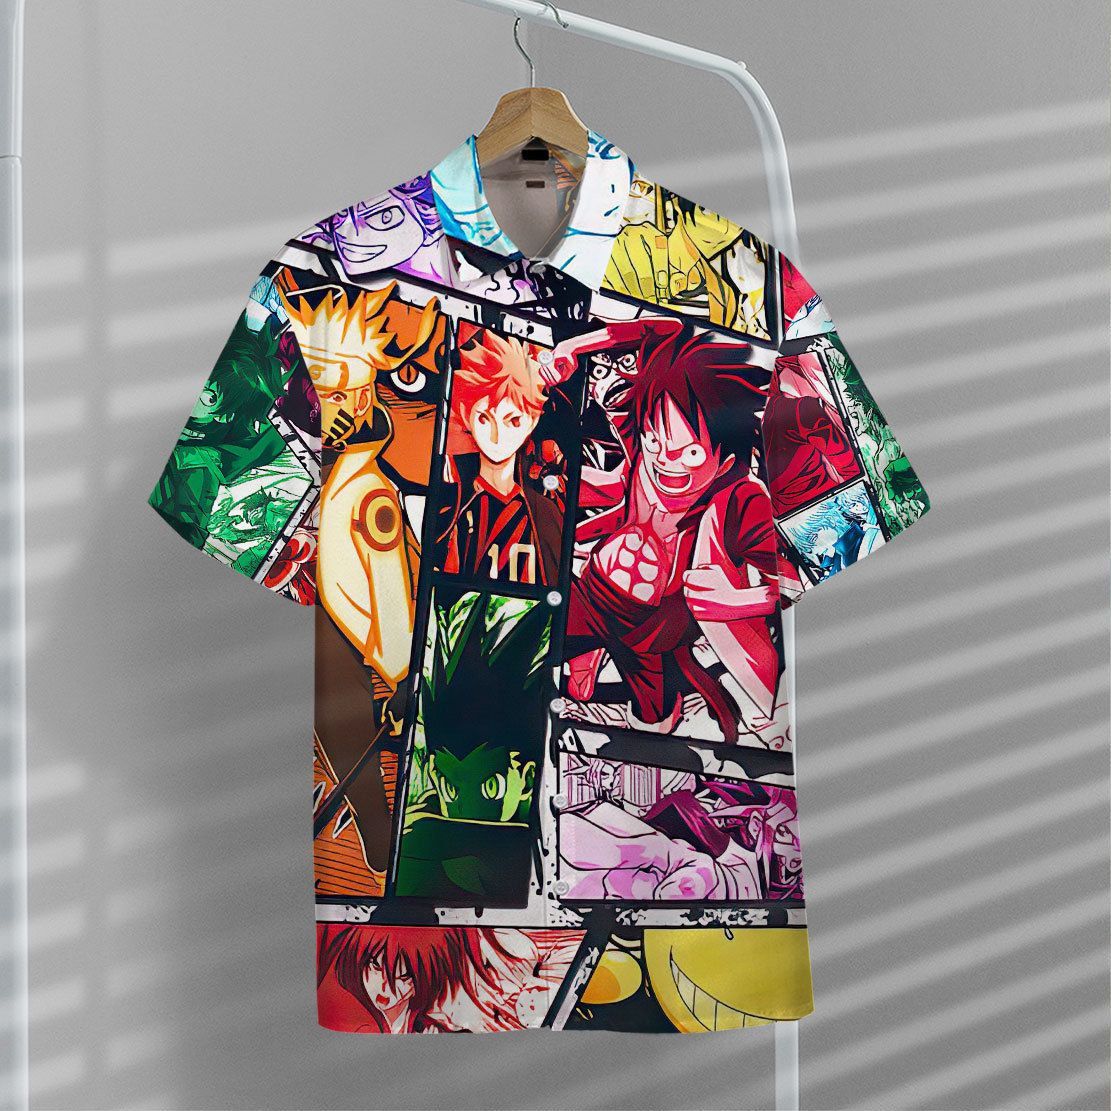 Anime Collection Hawaii Shirt